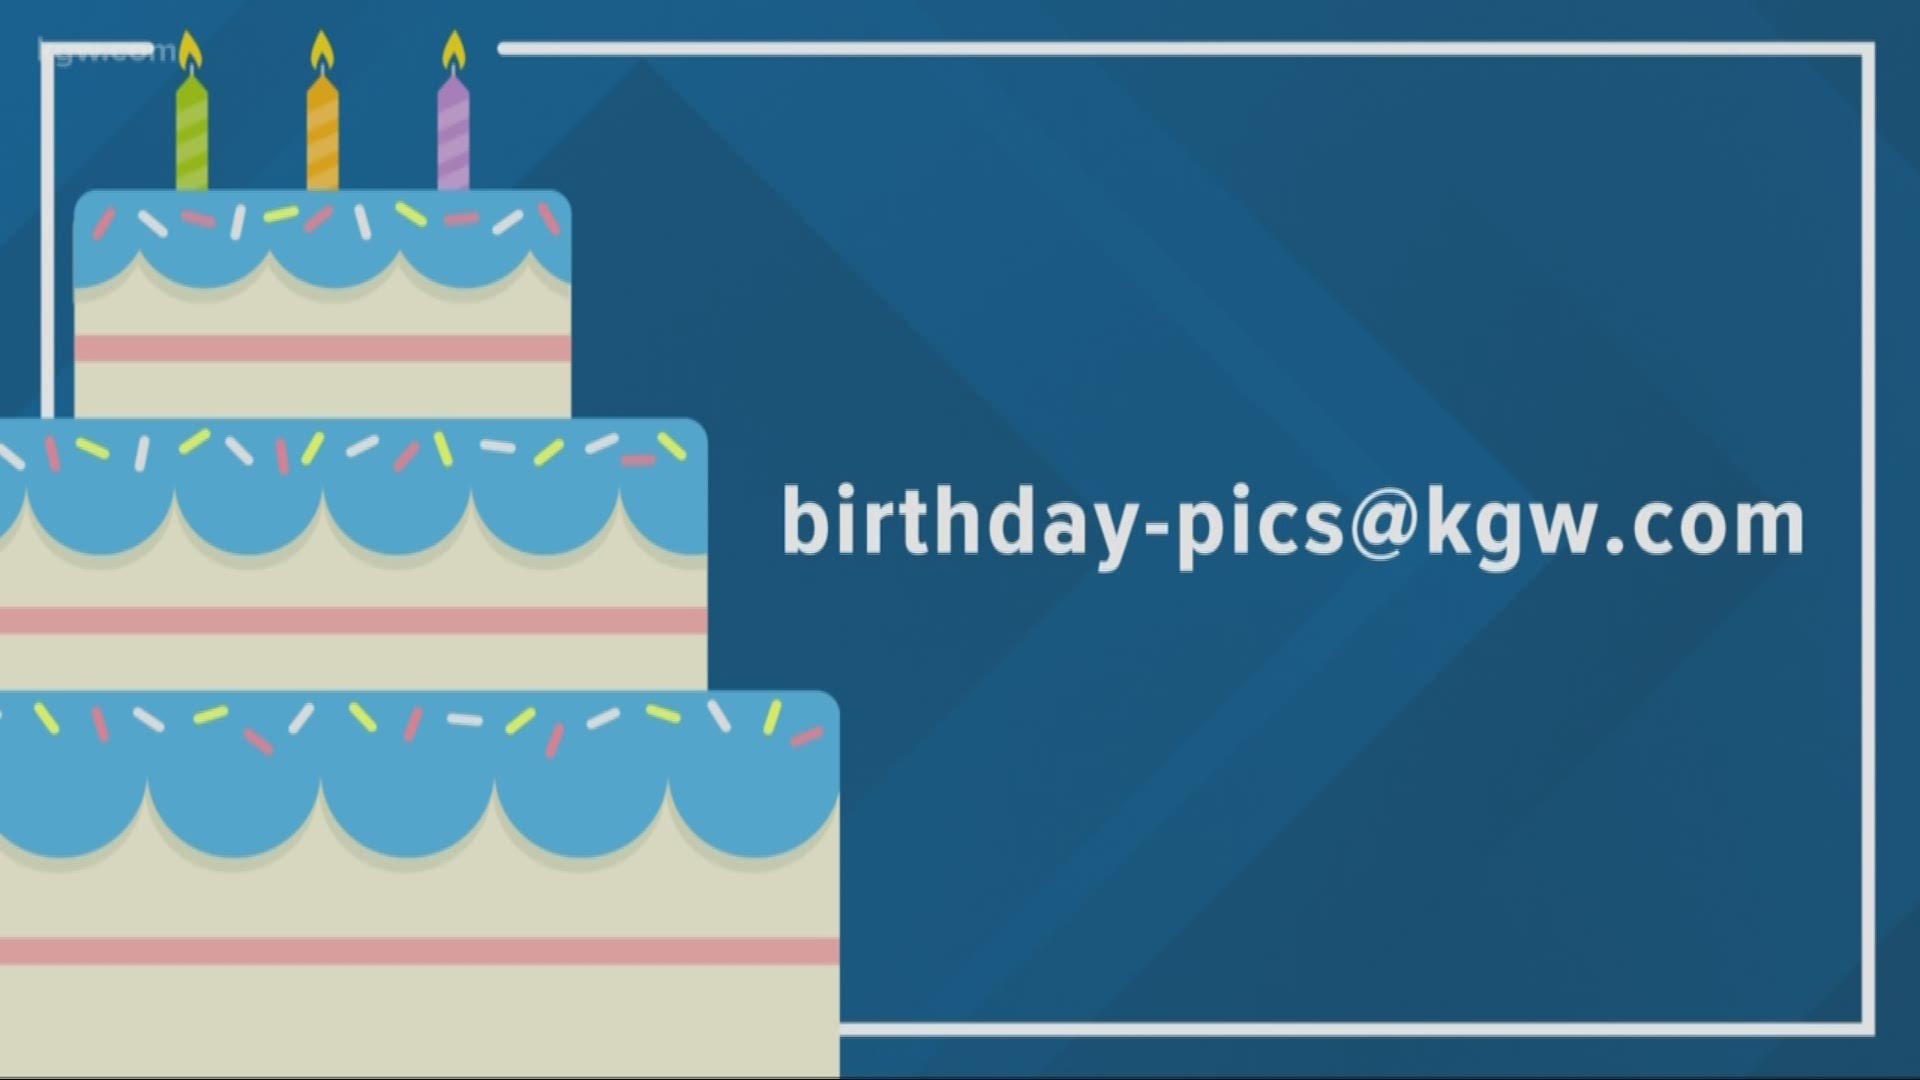 KGW viewer birthdays: 7-10-19